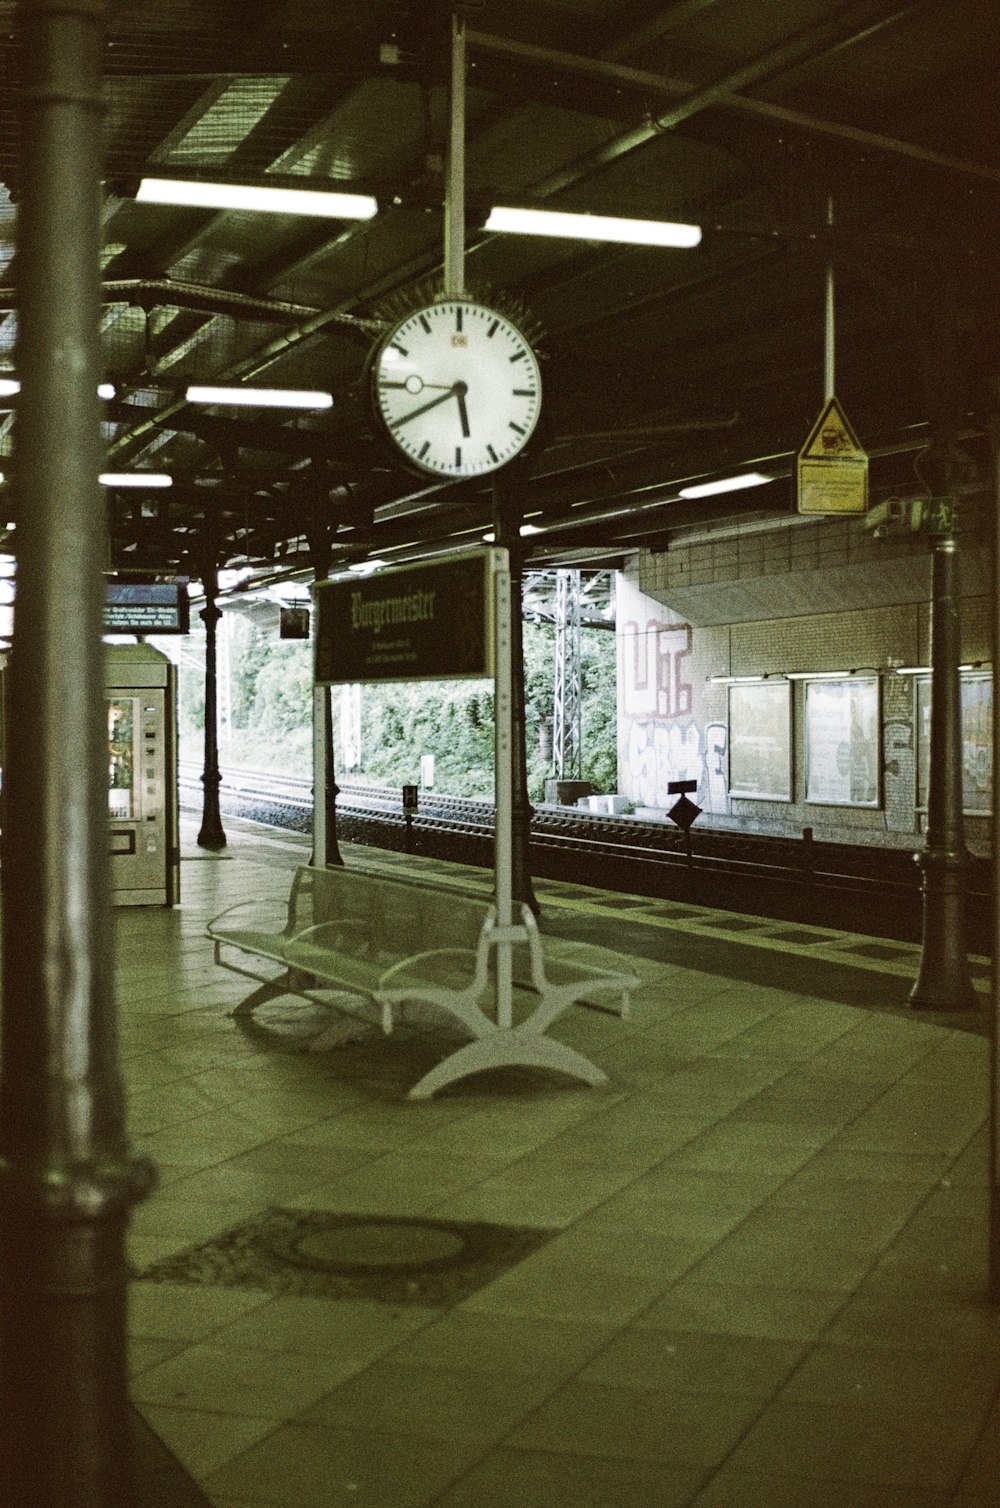 Un reloj en un poste en una estación de tren